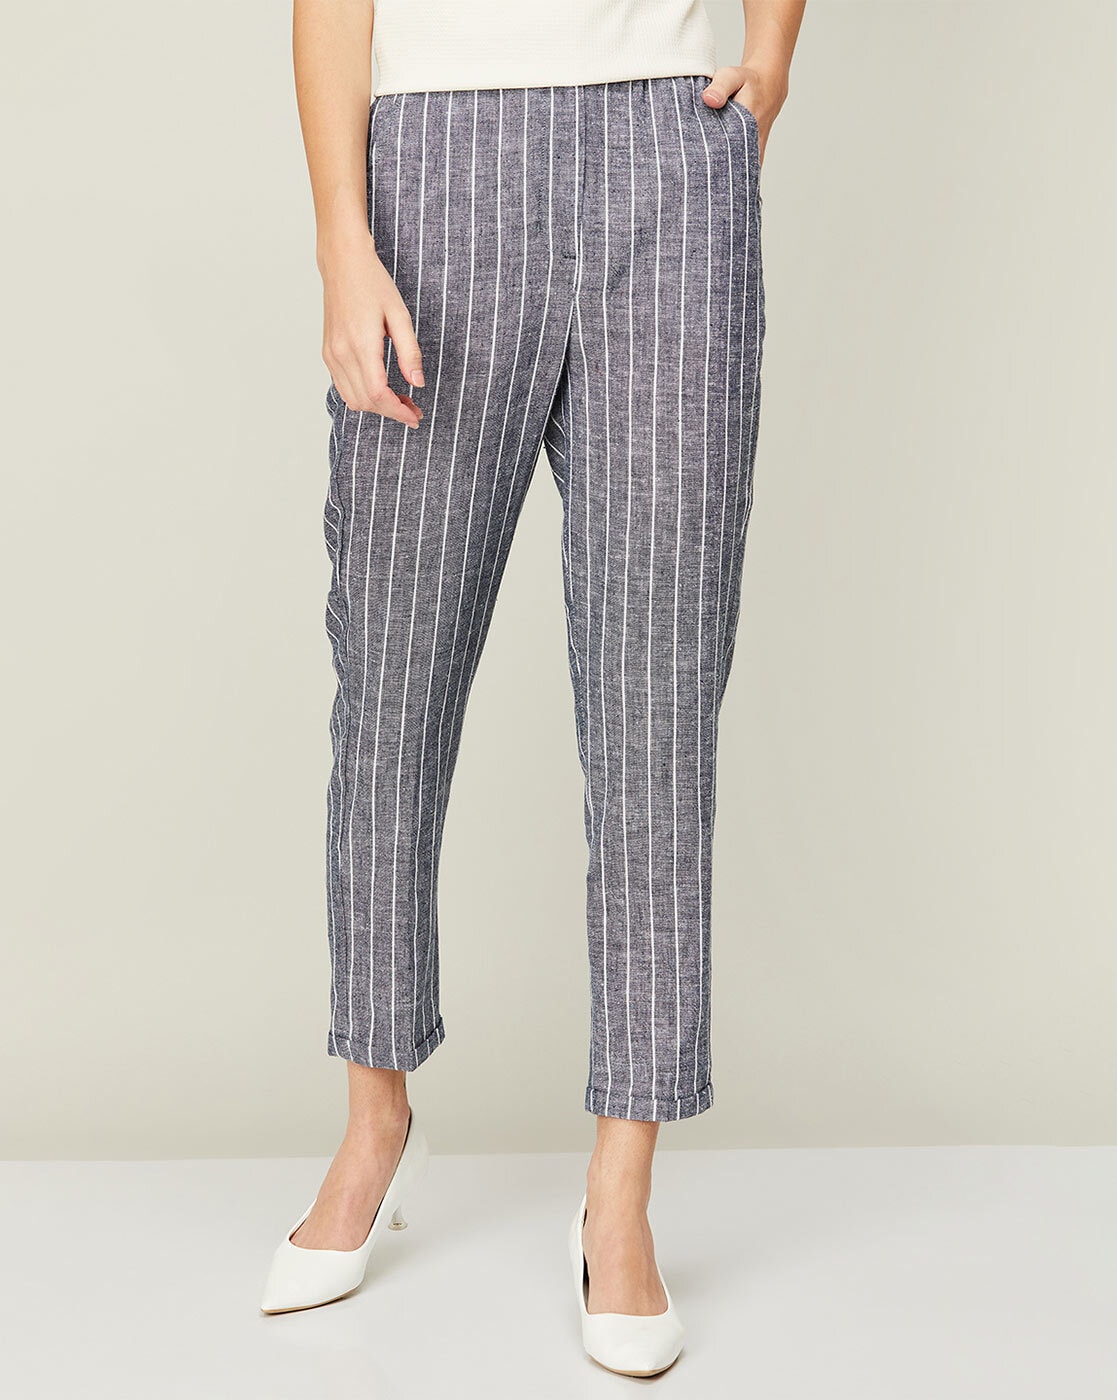 Lars Amadeus Striped Dress Pants for Men's Slim Fit Business Suit Trousers  - Walmart.com